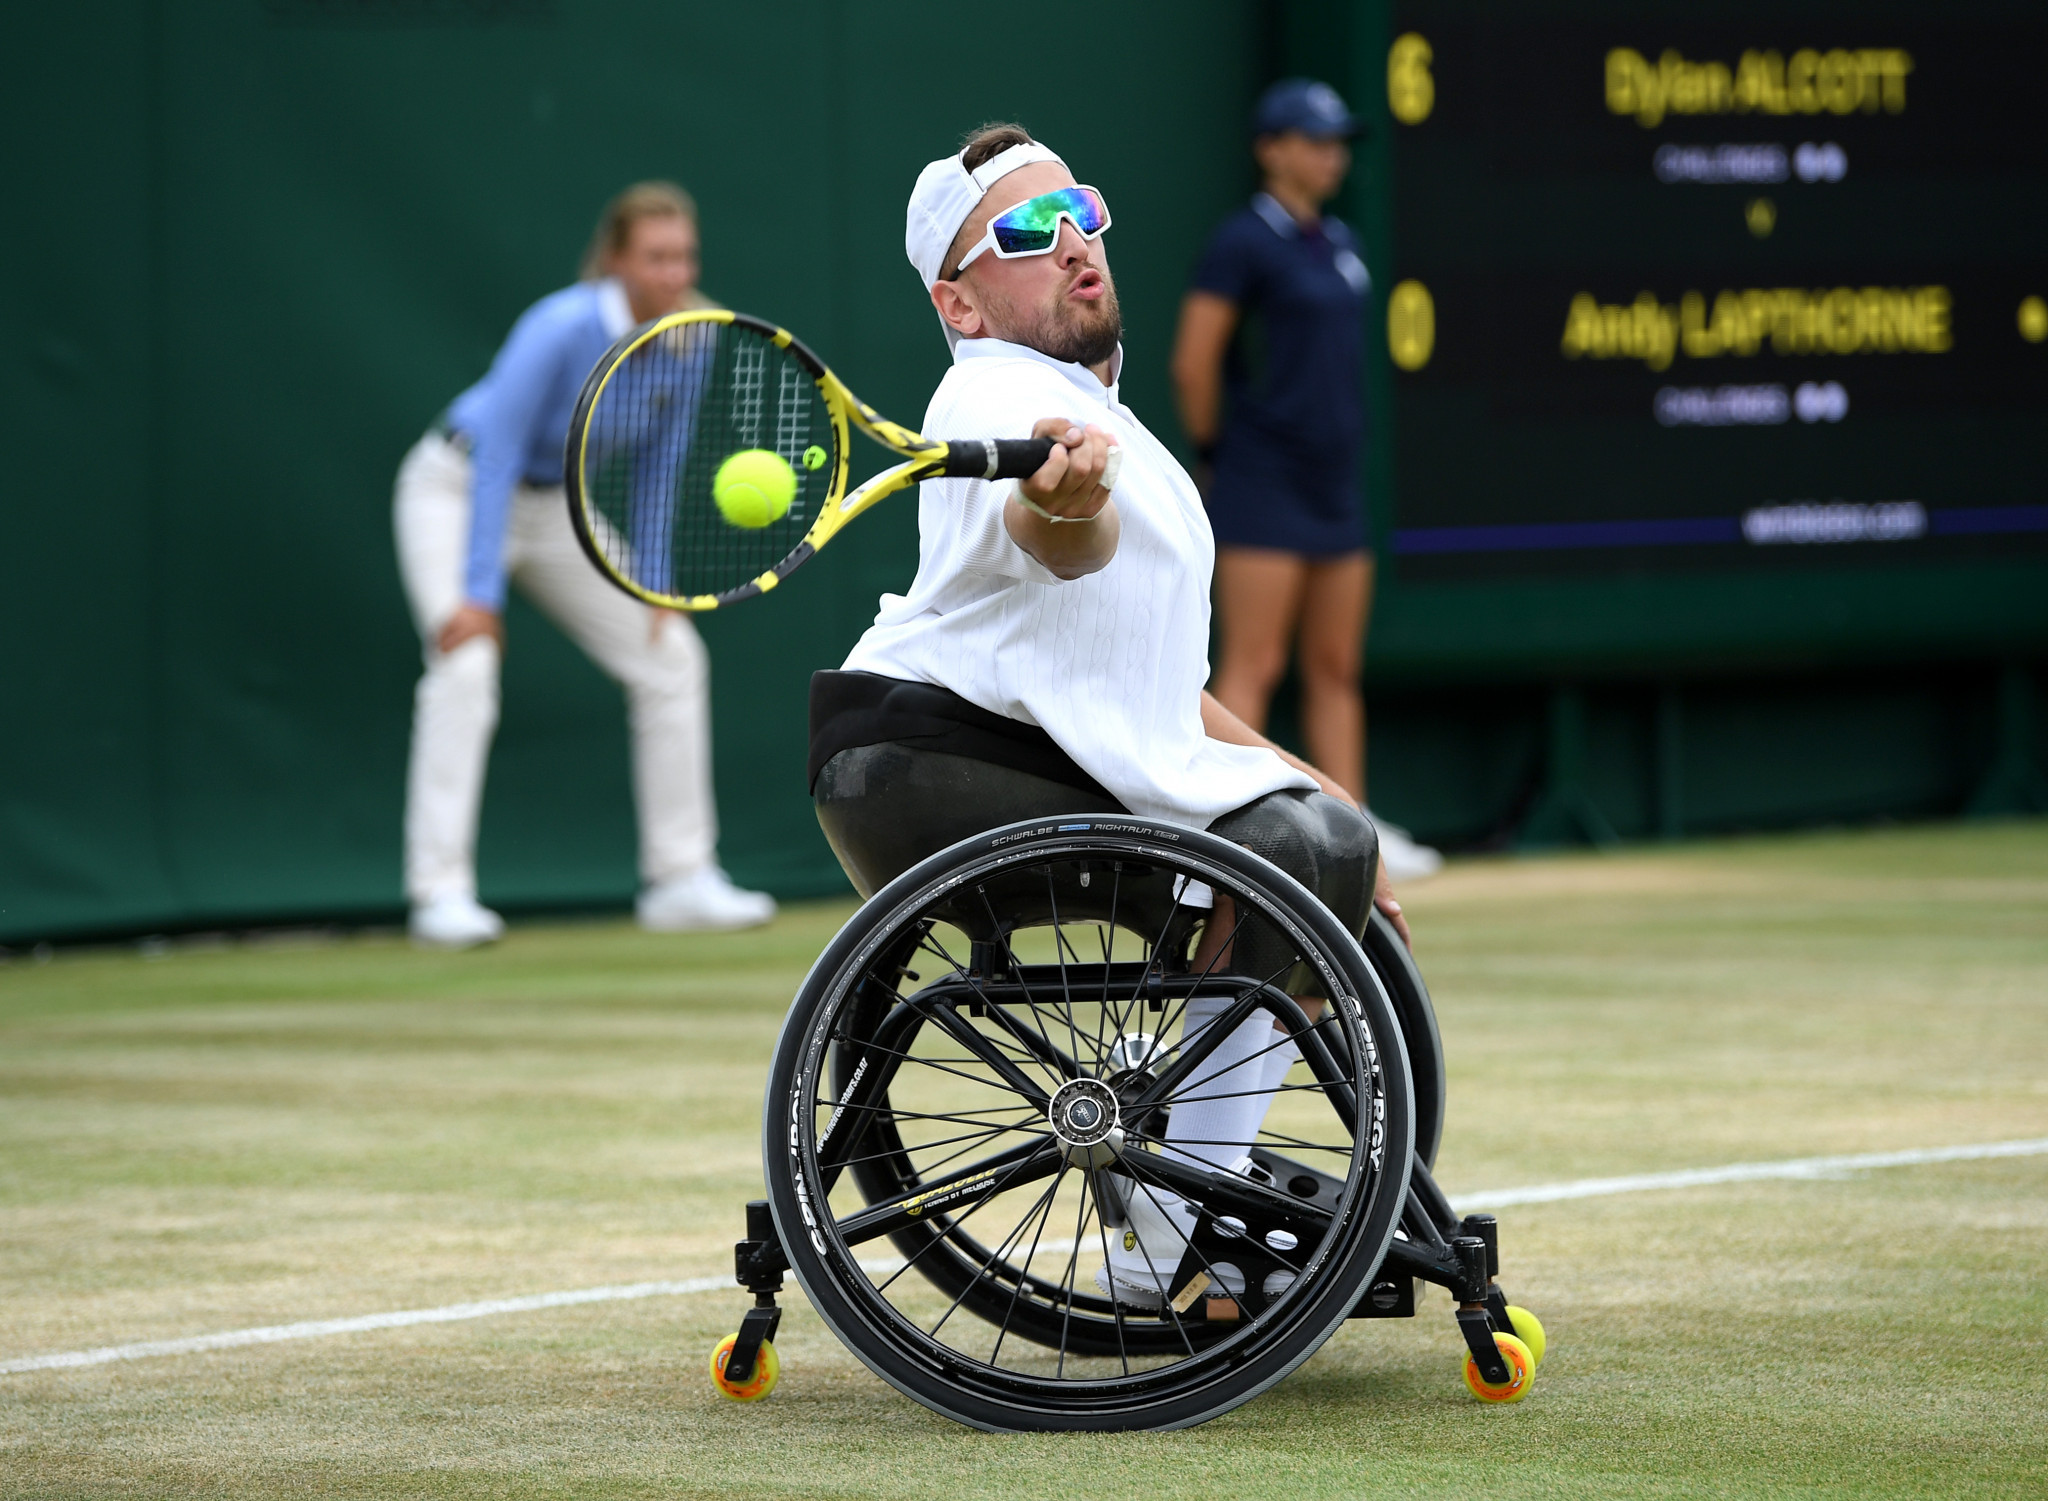 Alcott wins first quad wheelchair singles final at Wimbledon